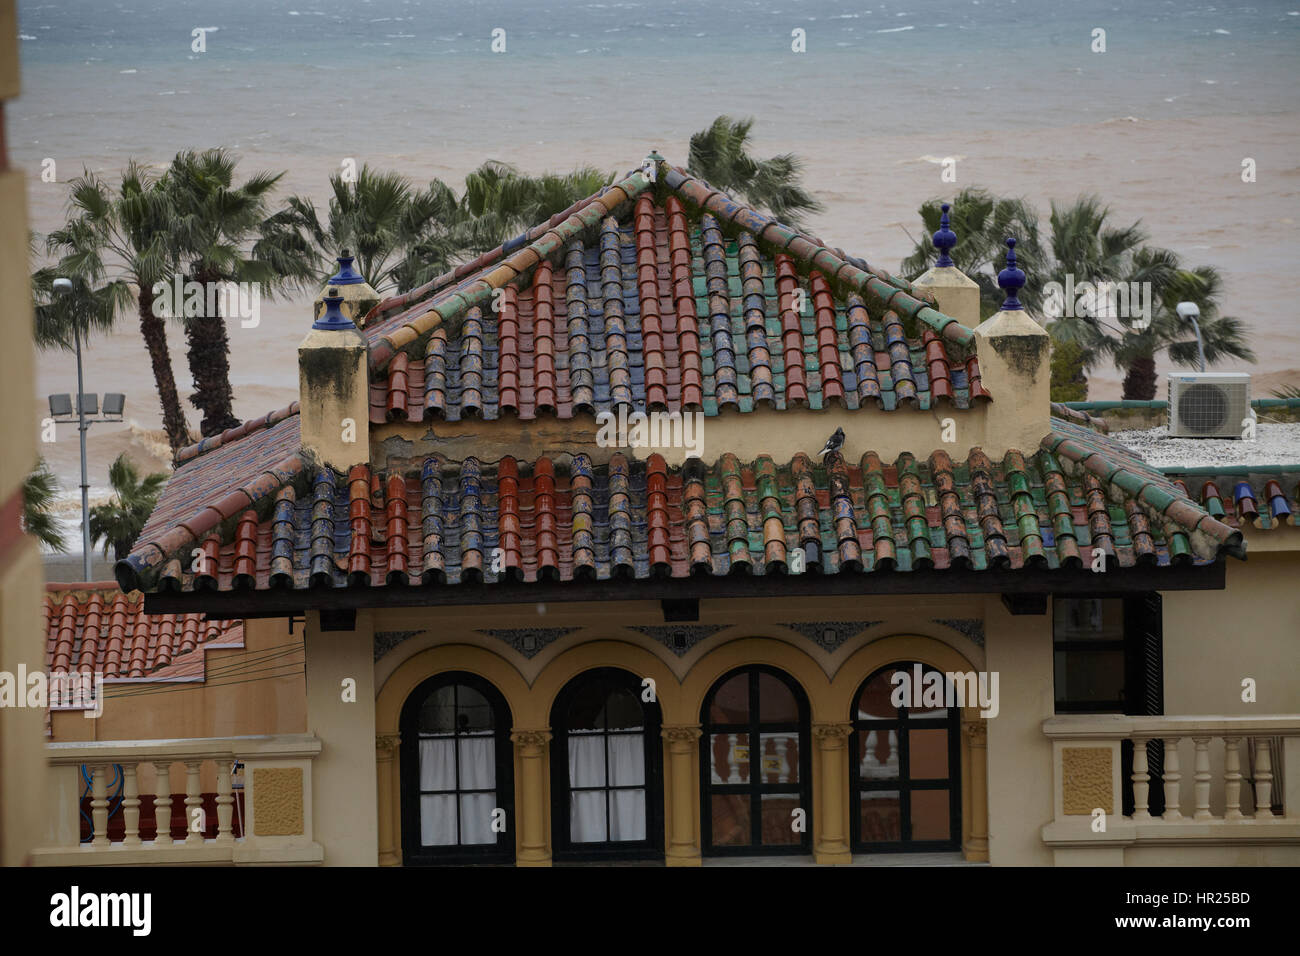 Roof of glazed ceramics, Malaga, Spain Stock Photo